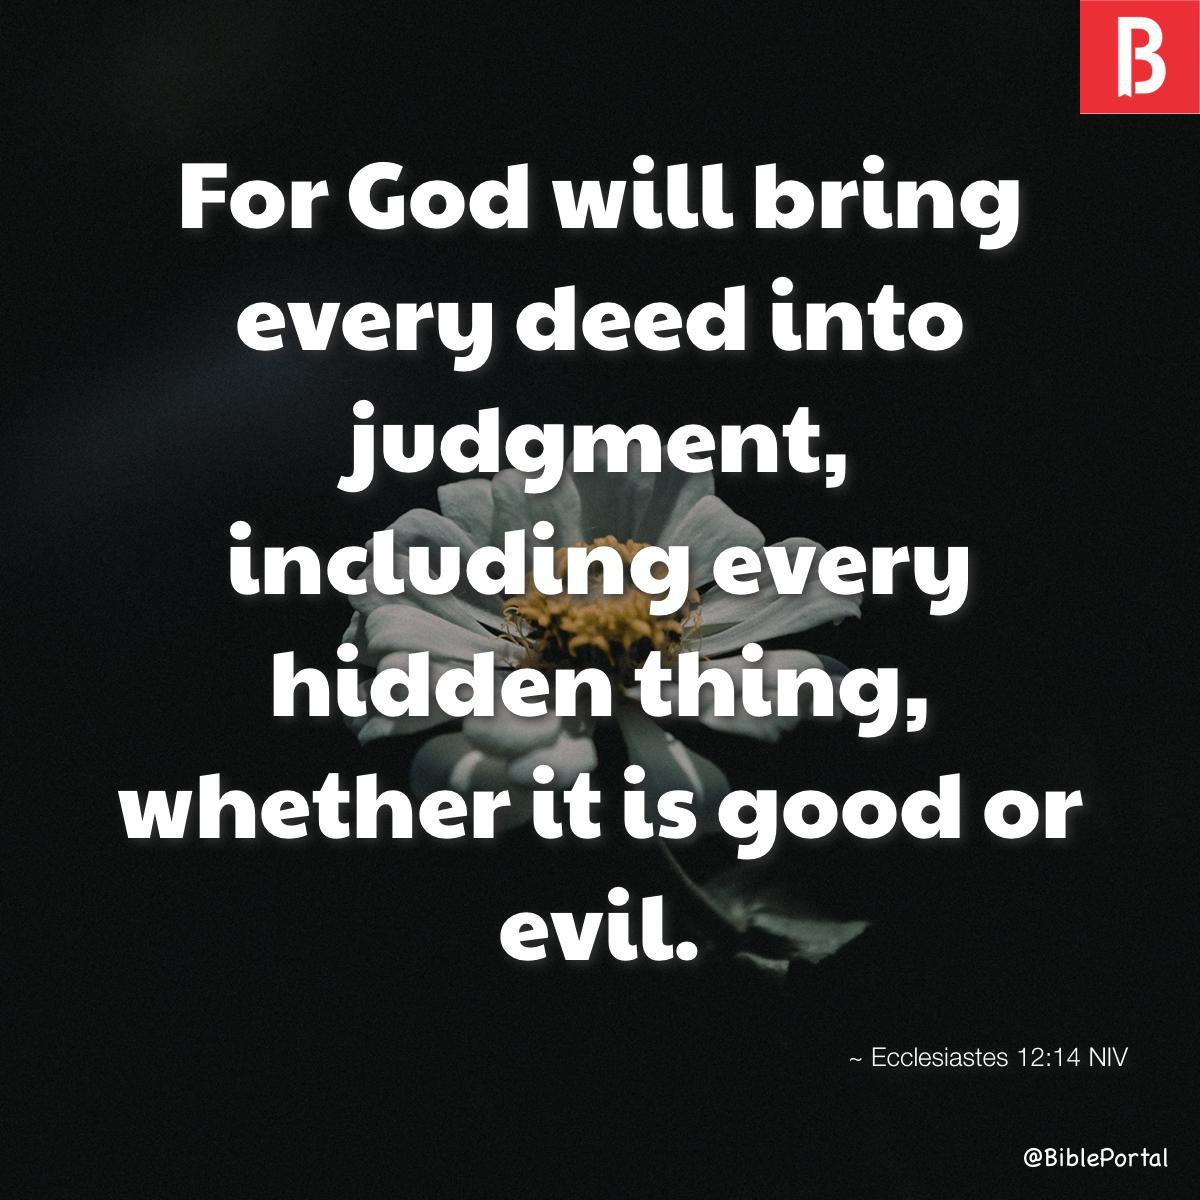 Ecclesiastes 12:14 NIV